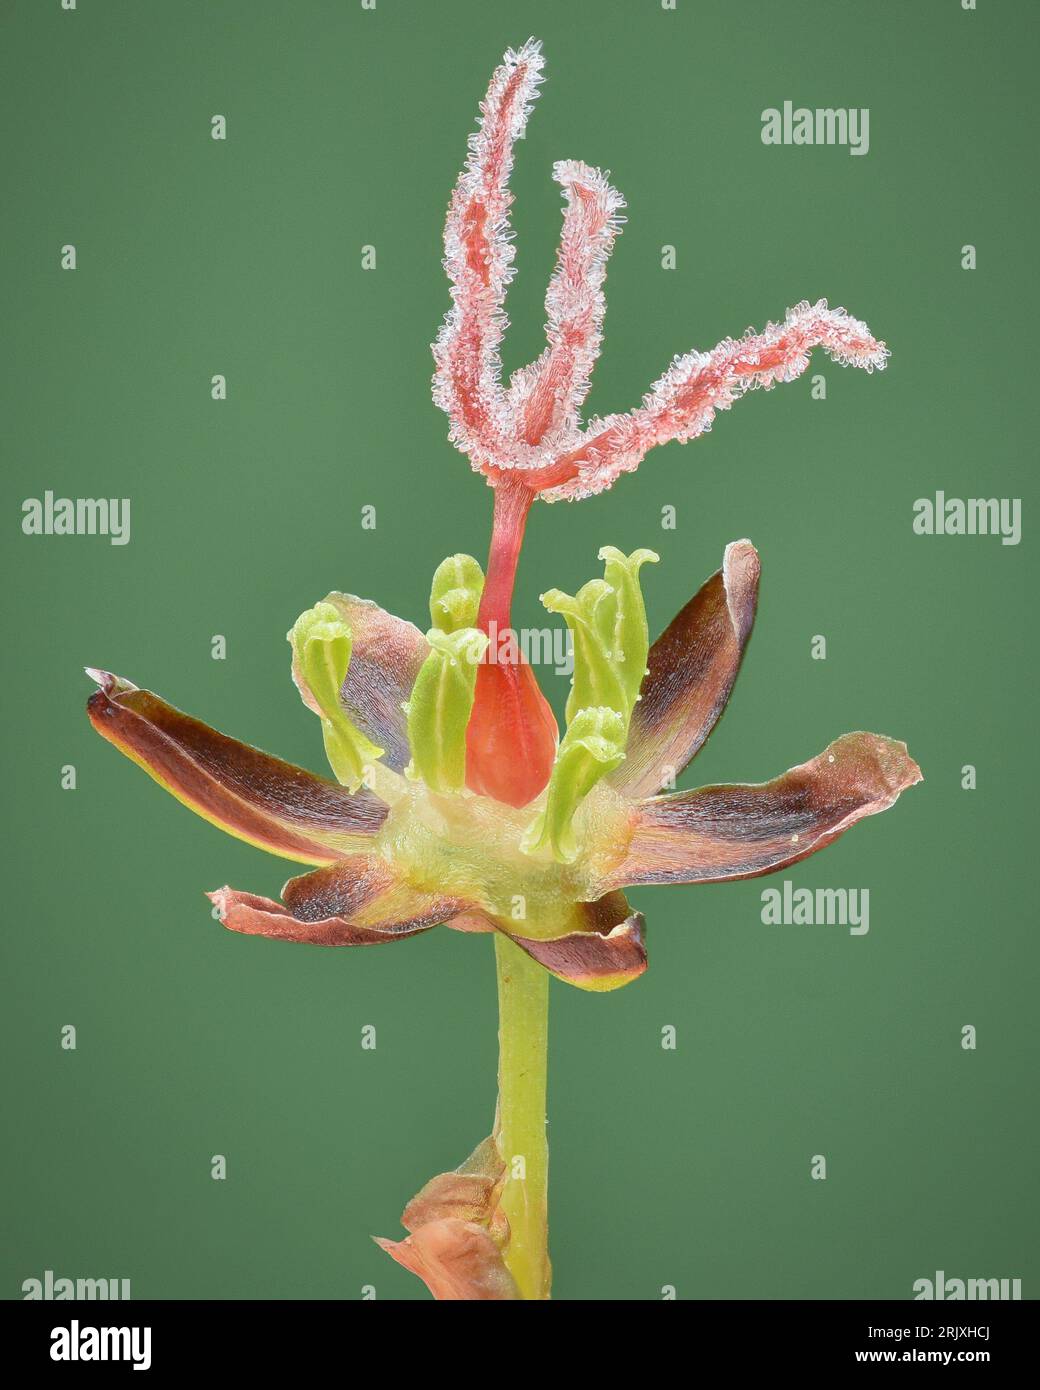 Gros plan de la fleur ouverte d'une ruée des marais salants (Juncus gerardi) avec un carpel rouge vif, sur fond vert, situé à la mer des Wadden Banque D'Images